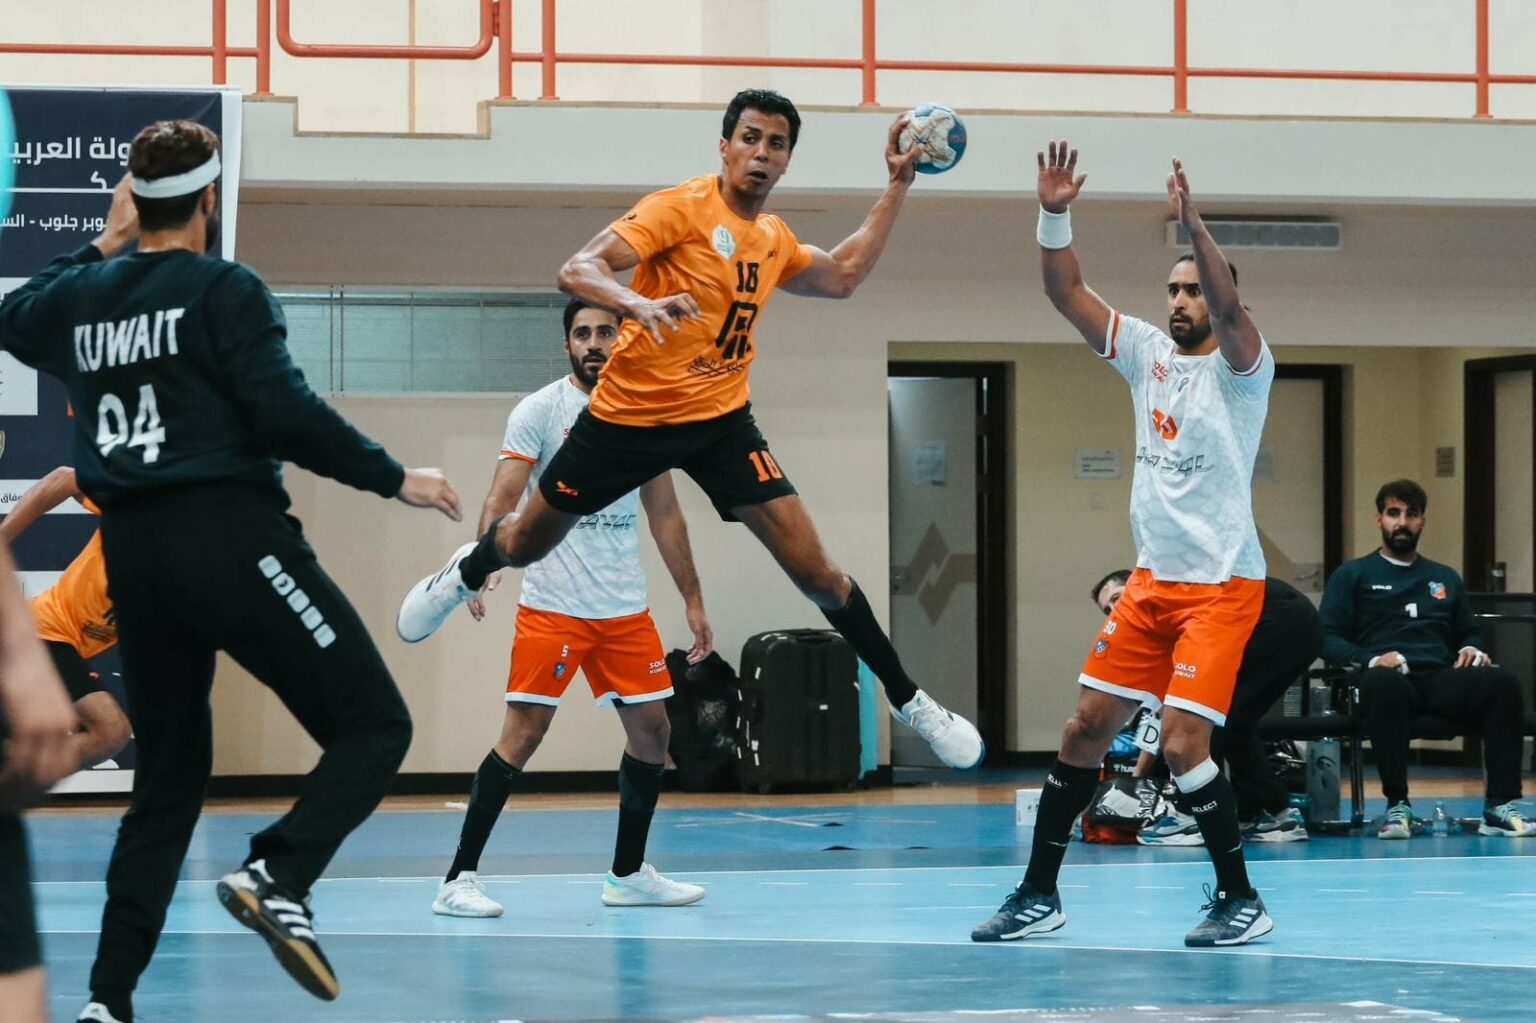 البنك الأهلي يتعادل مع الكويت الكويتي (32 - 32) في البطولة العربية لكرة اليد